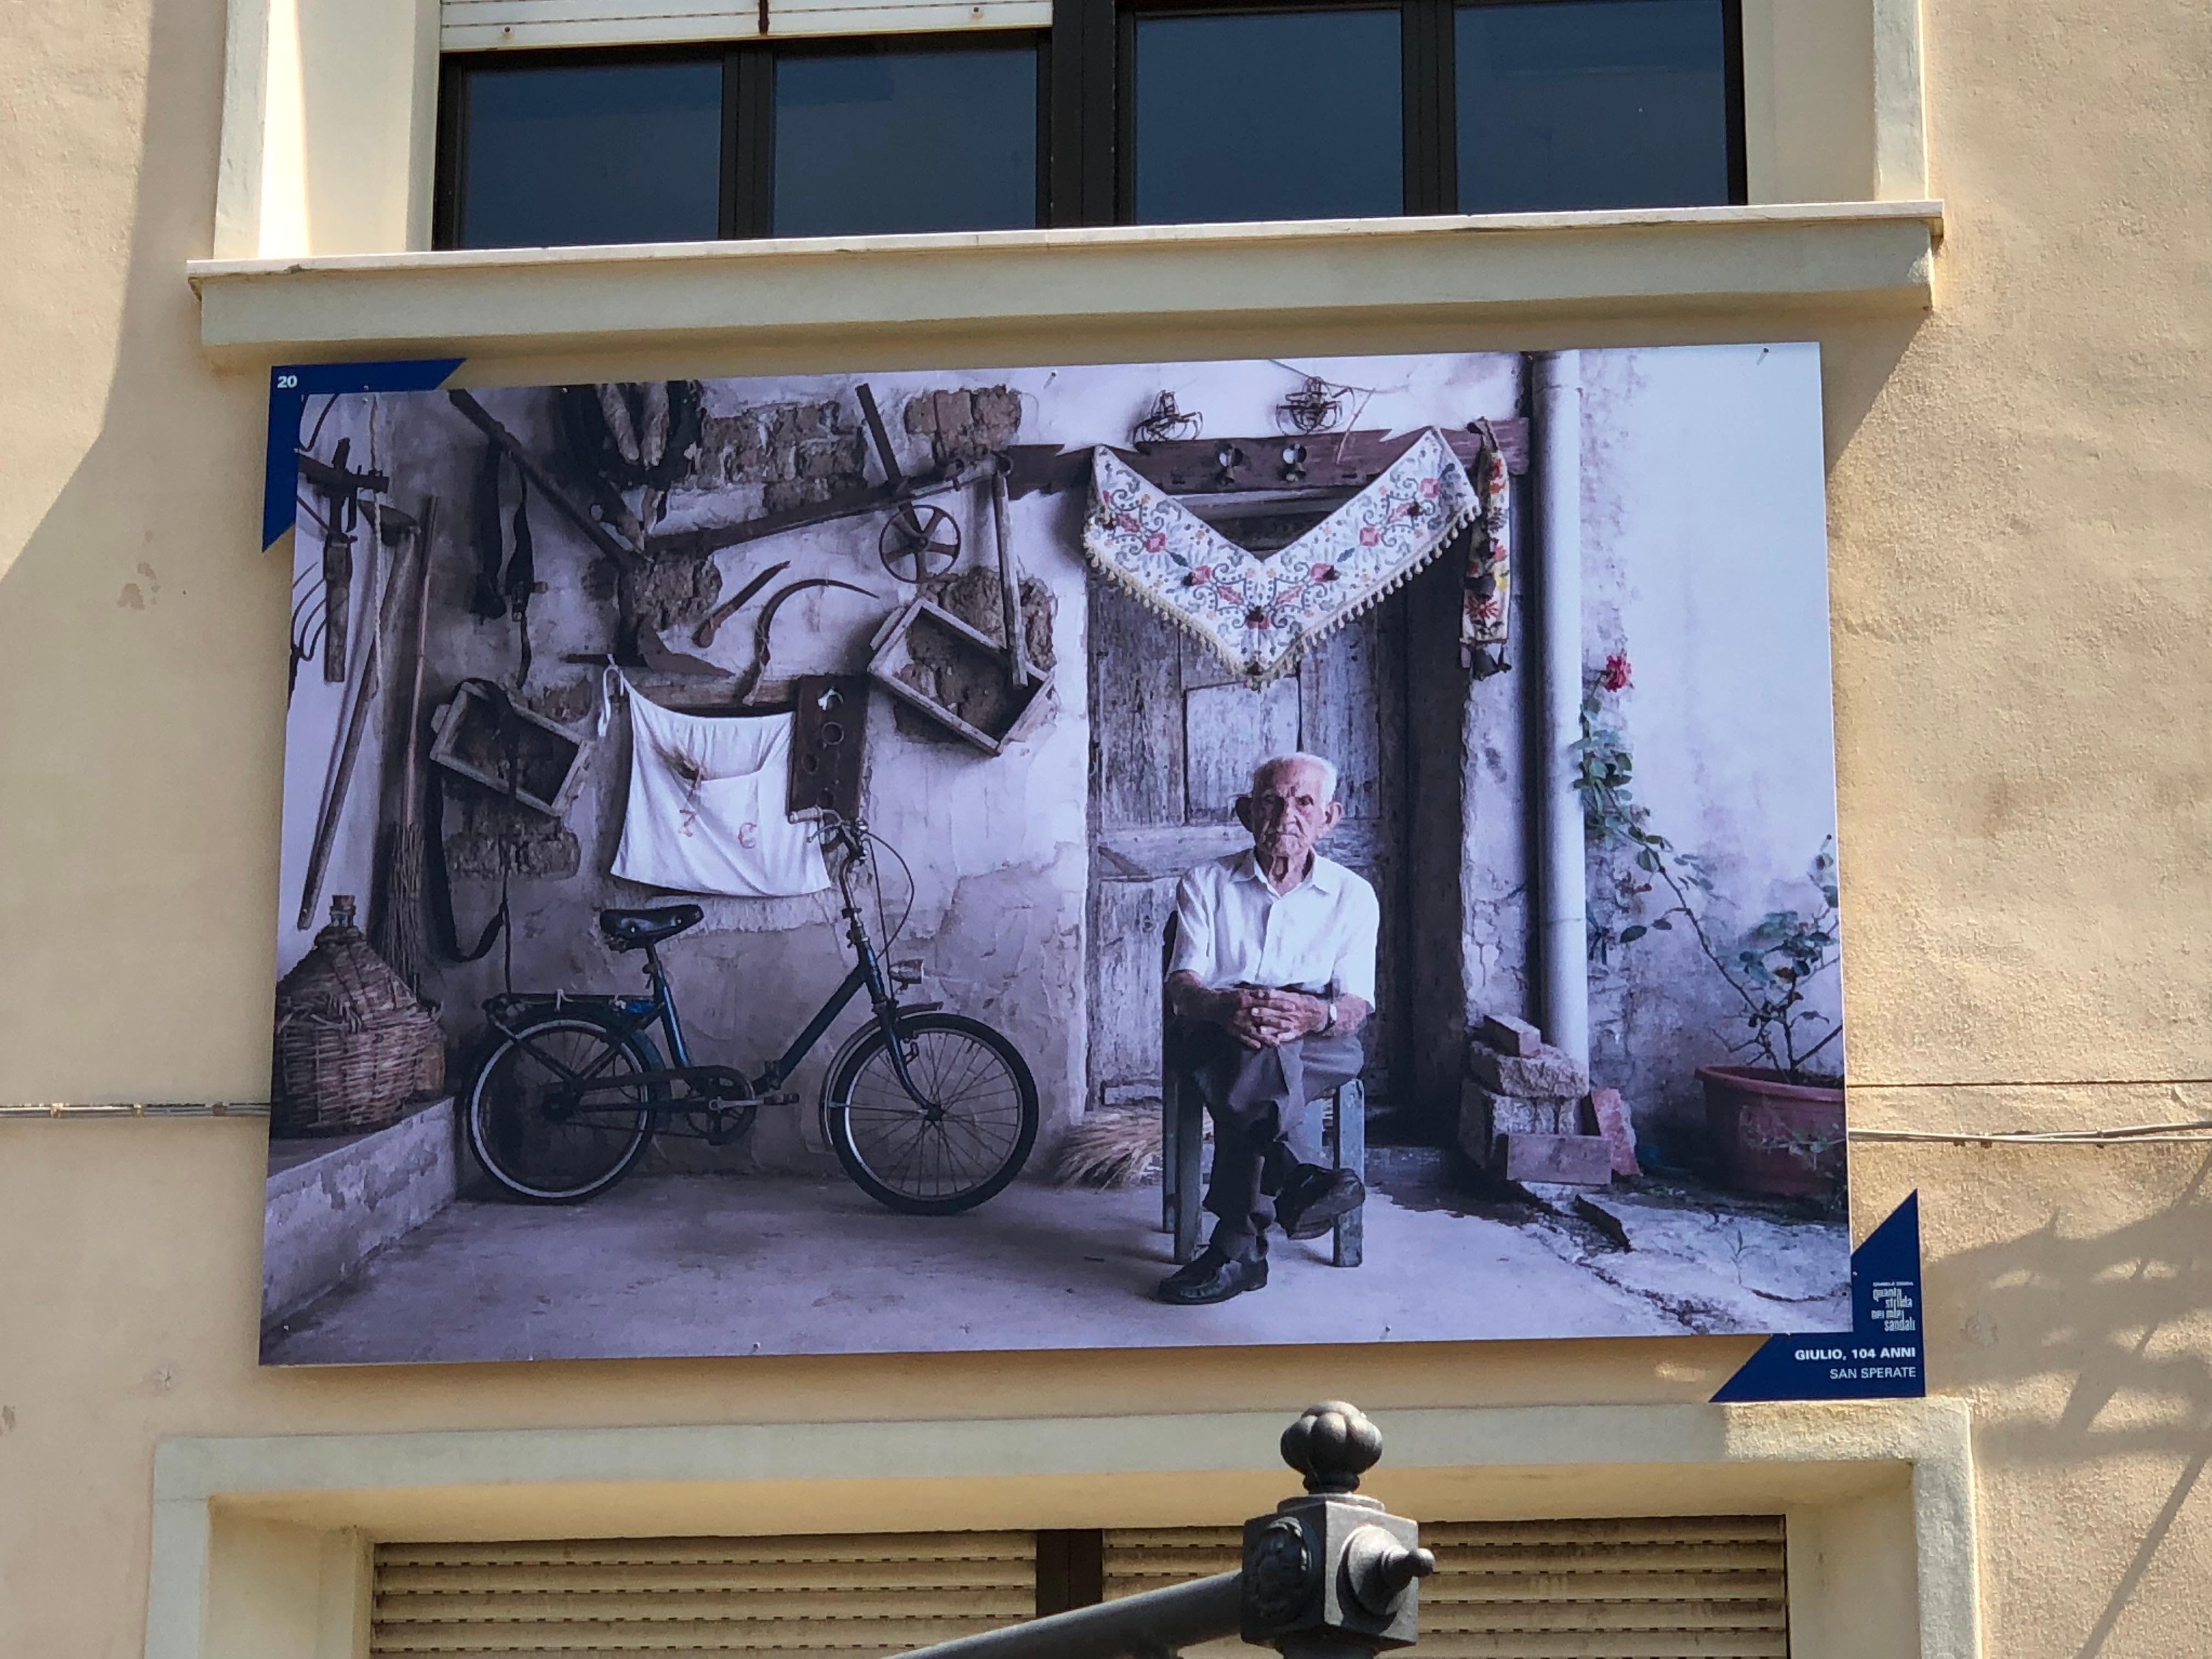 Alghero auf Sardinien - gespickt mit Fotos von 100 jährigen Menschen aus der Stadt - #städtetrip#travelchallenge